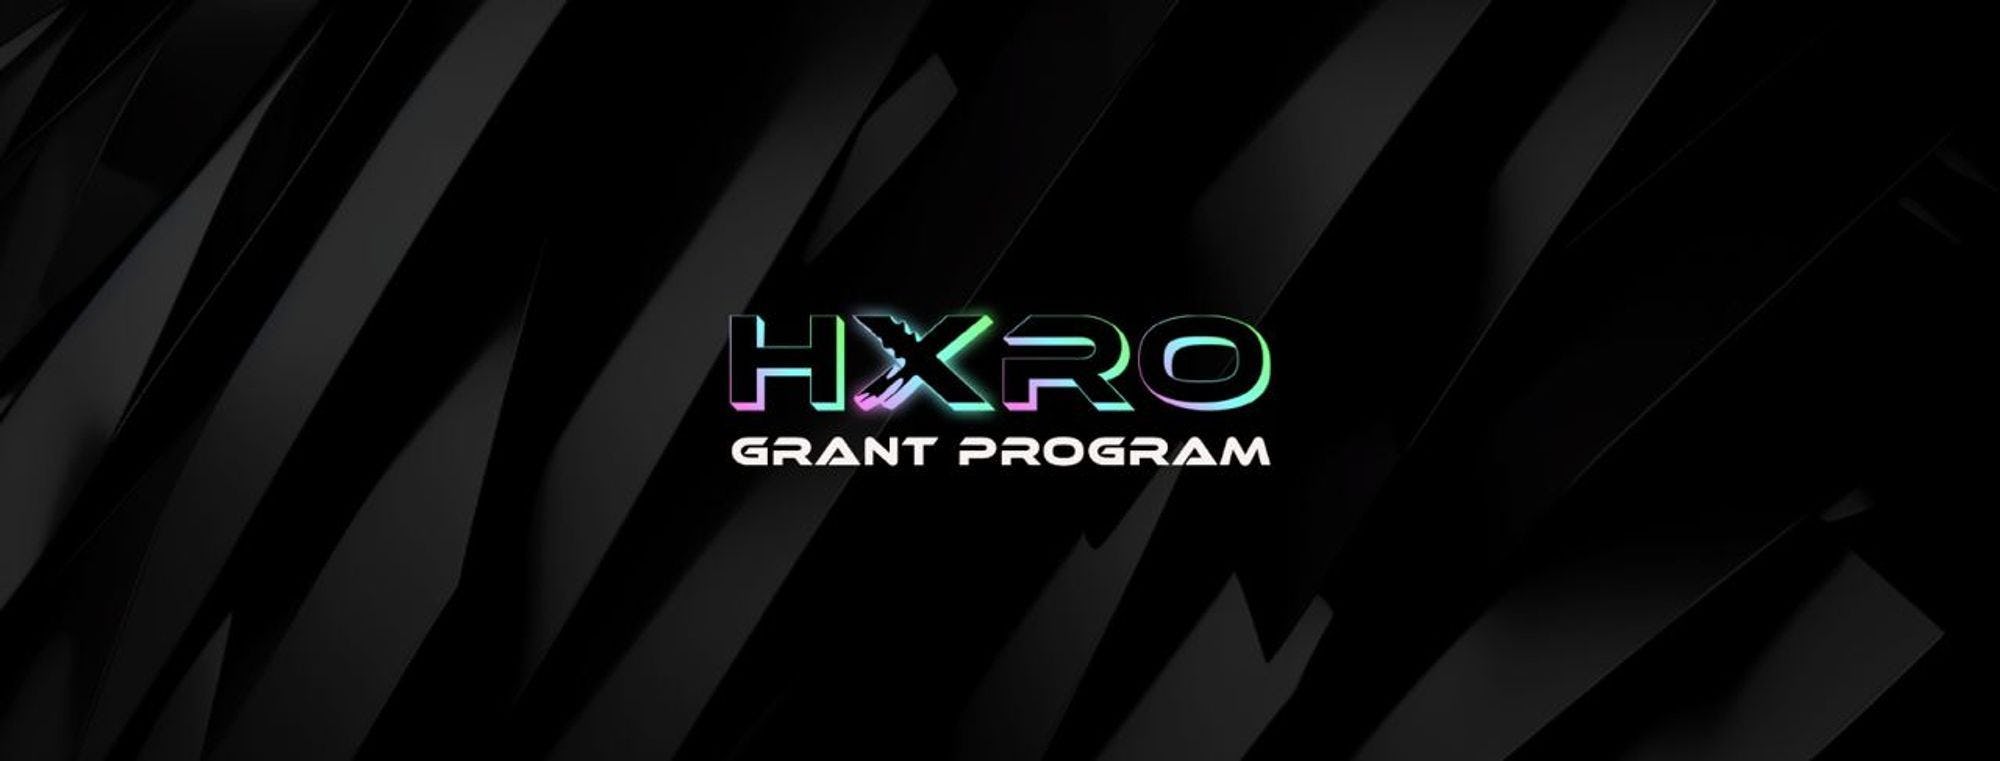 Hxro Network - #ProofOfHxro Instagrants